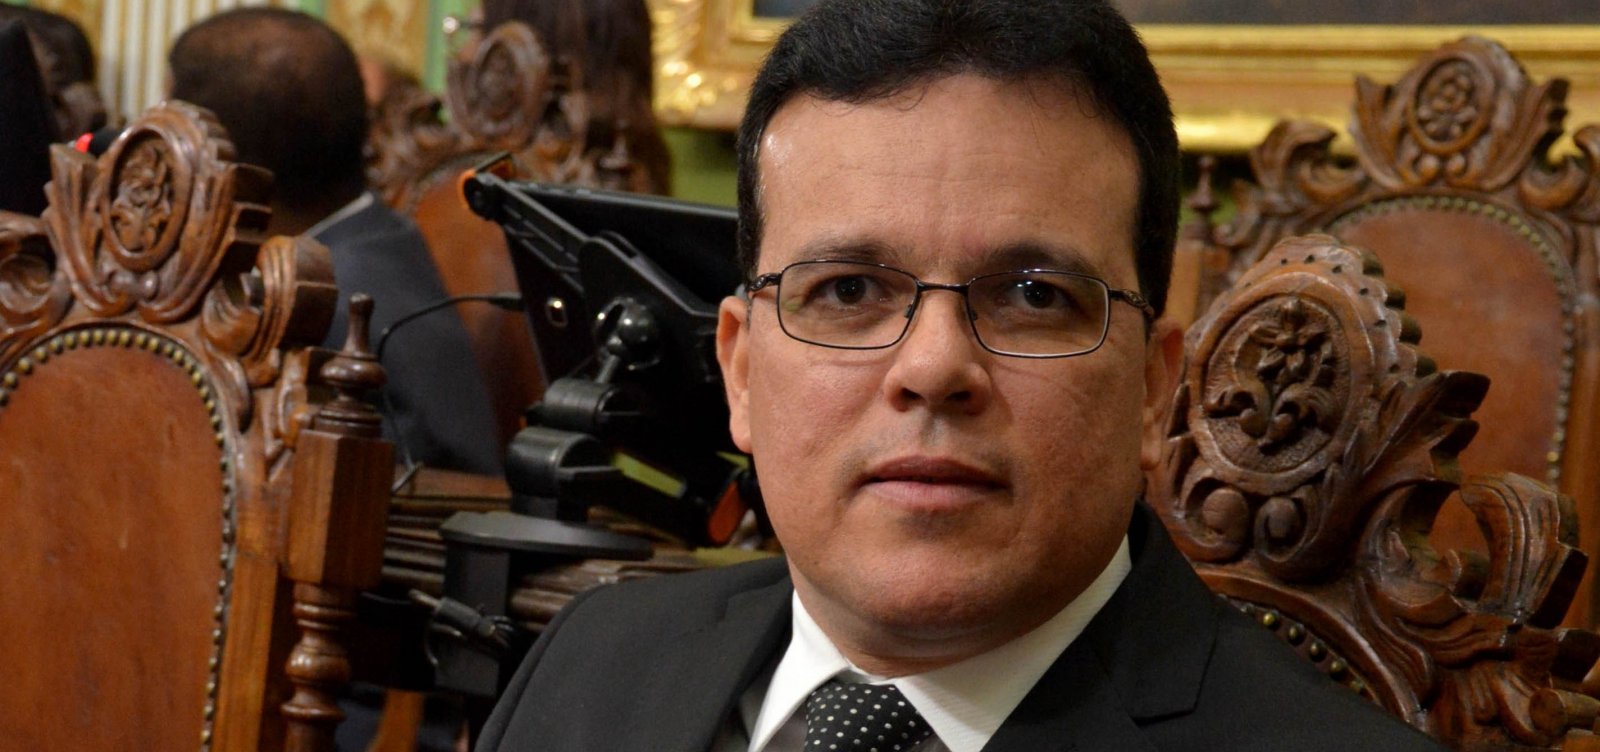 Vereador Ricardo Almeida promete ir até 'as últimas consequências' contra 'peladatona'